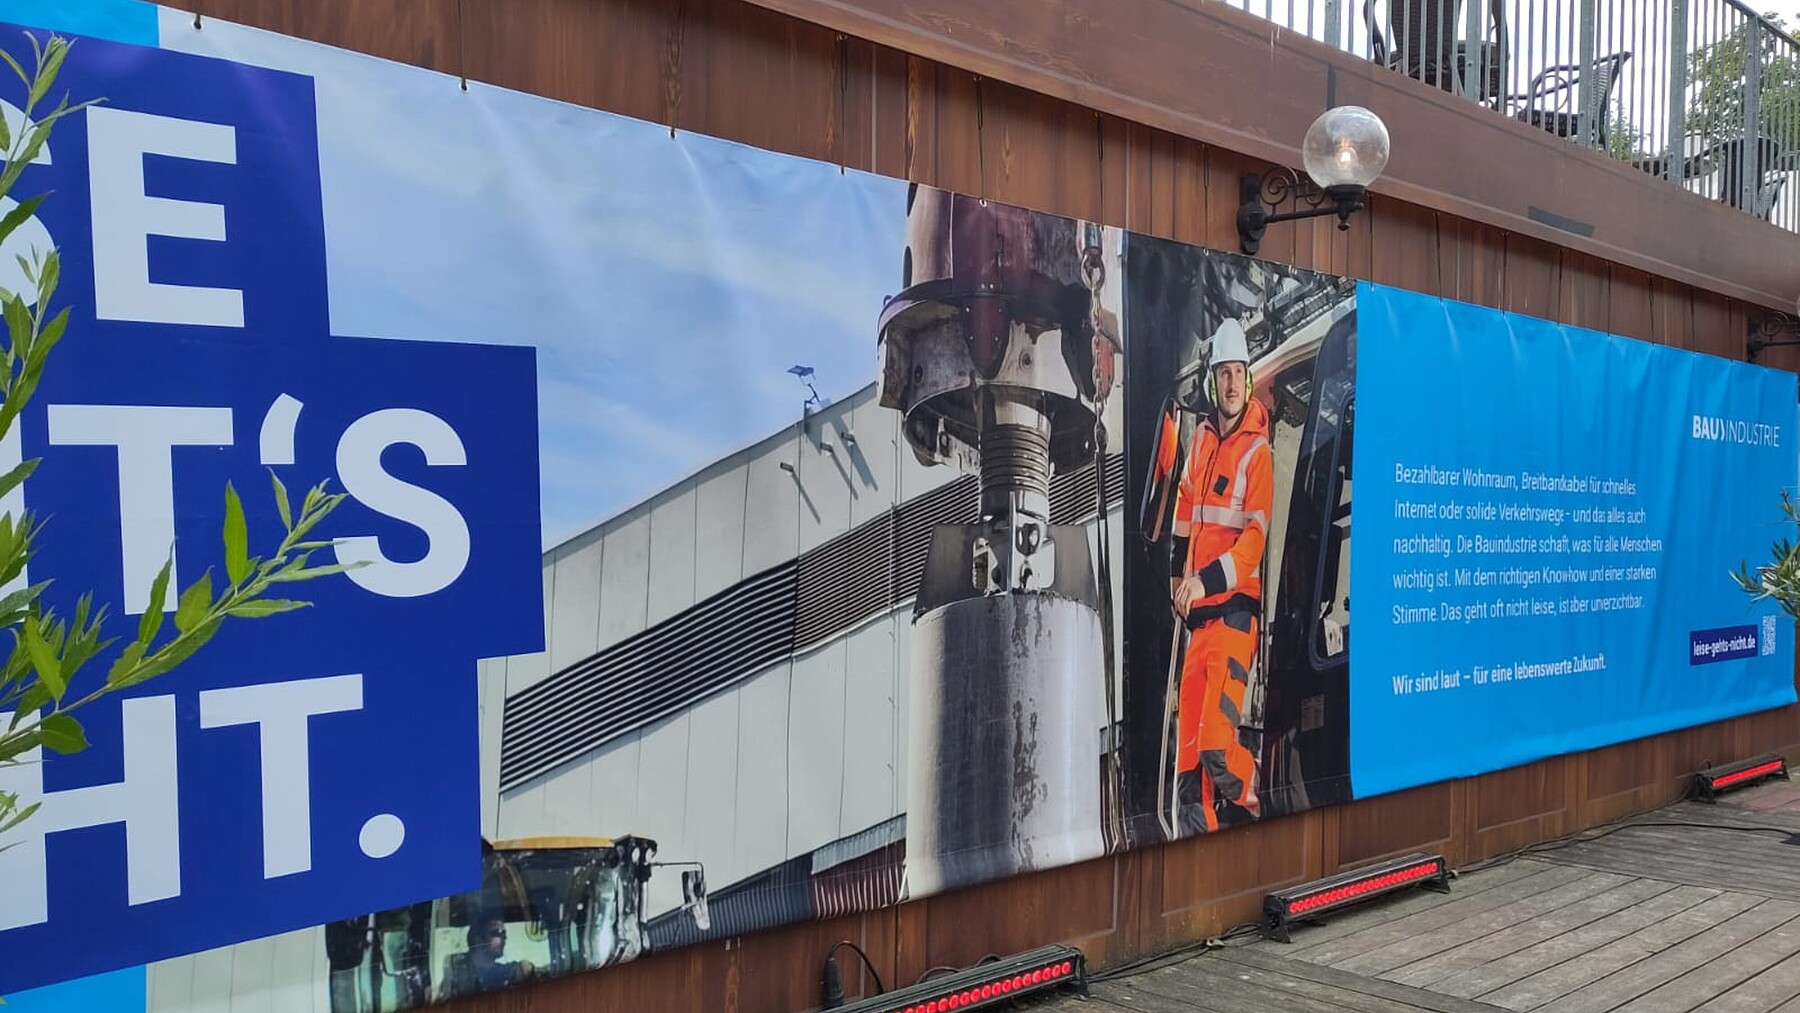 Ansicht eines großflächigen Banners, das einen Bauarbeiter auf einer Maschine und den Kampagnenclaim zeigt, an einem Gebäude.